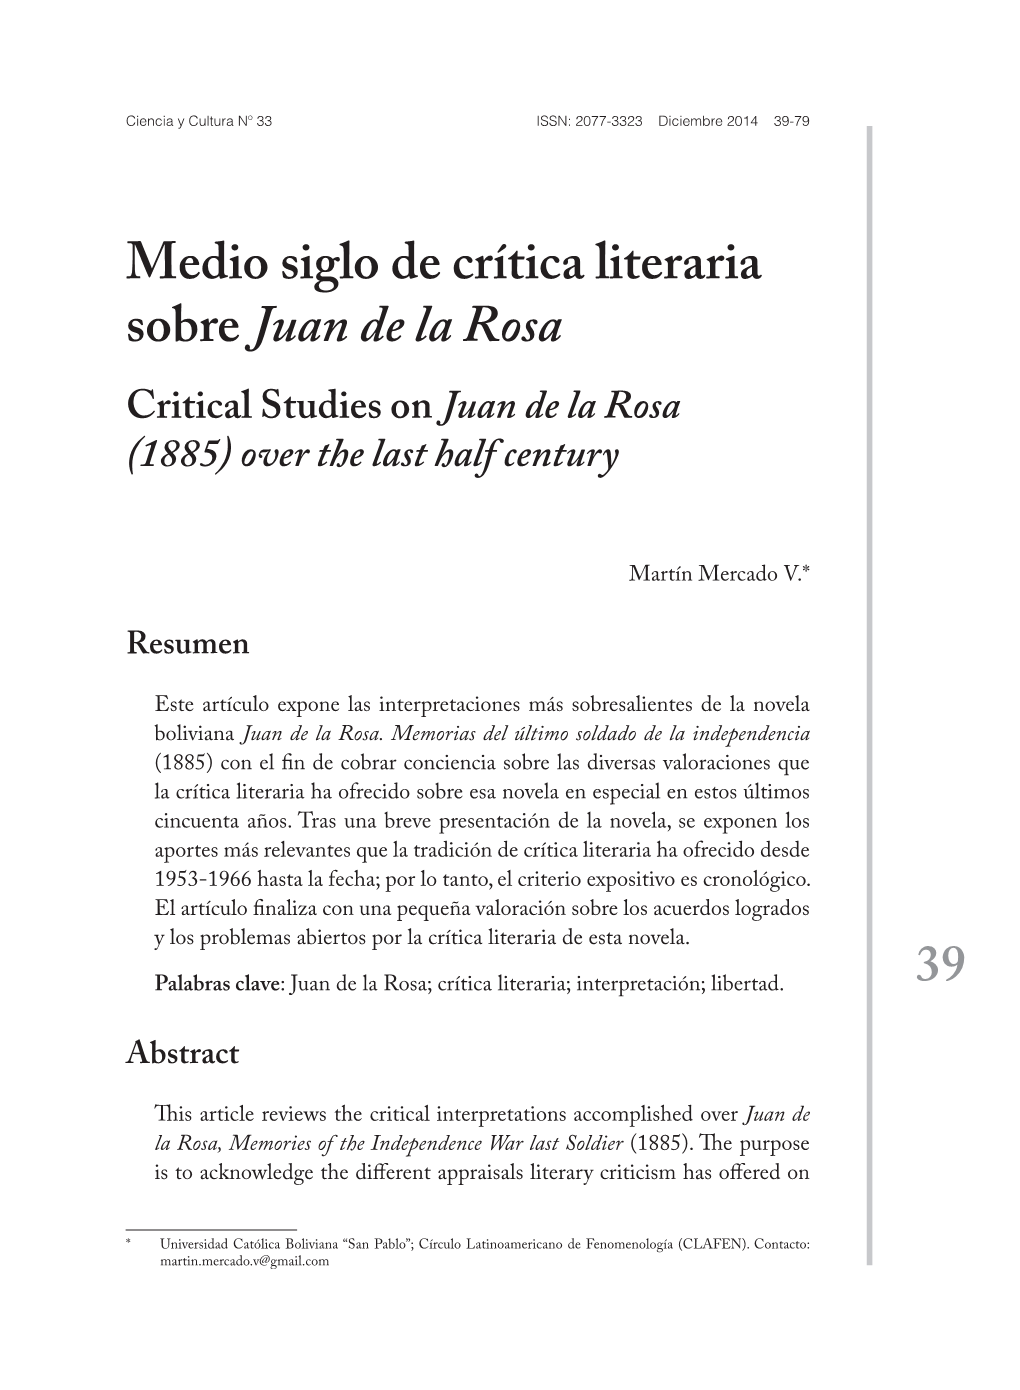 Medio Siglo De Crítica Literaria Sobre Juan De La Rosa Critical Studies on Juan De La Rosa (1885) Over the Last Half Century